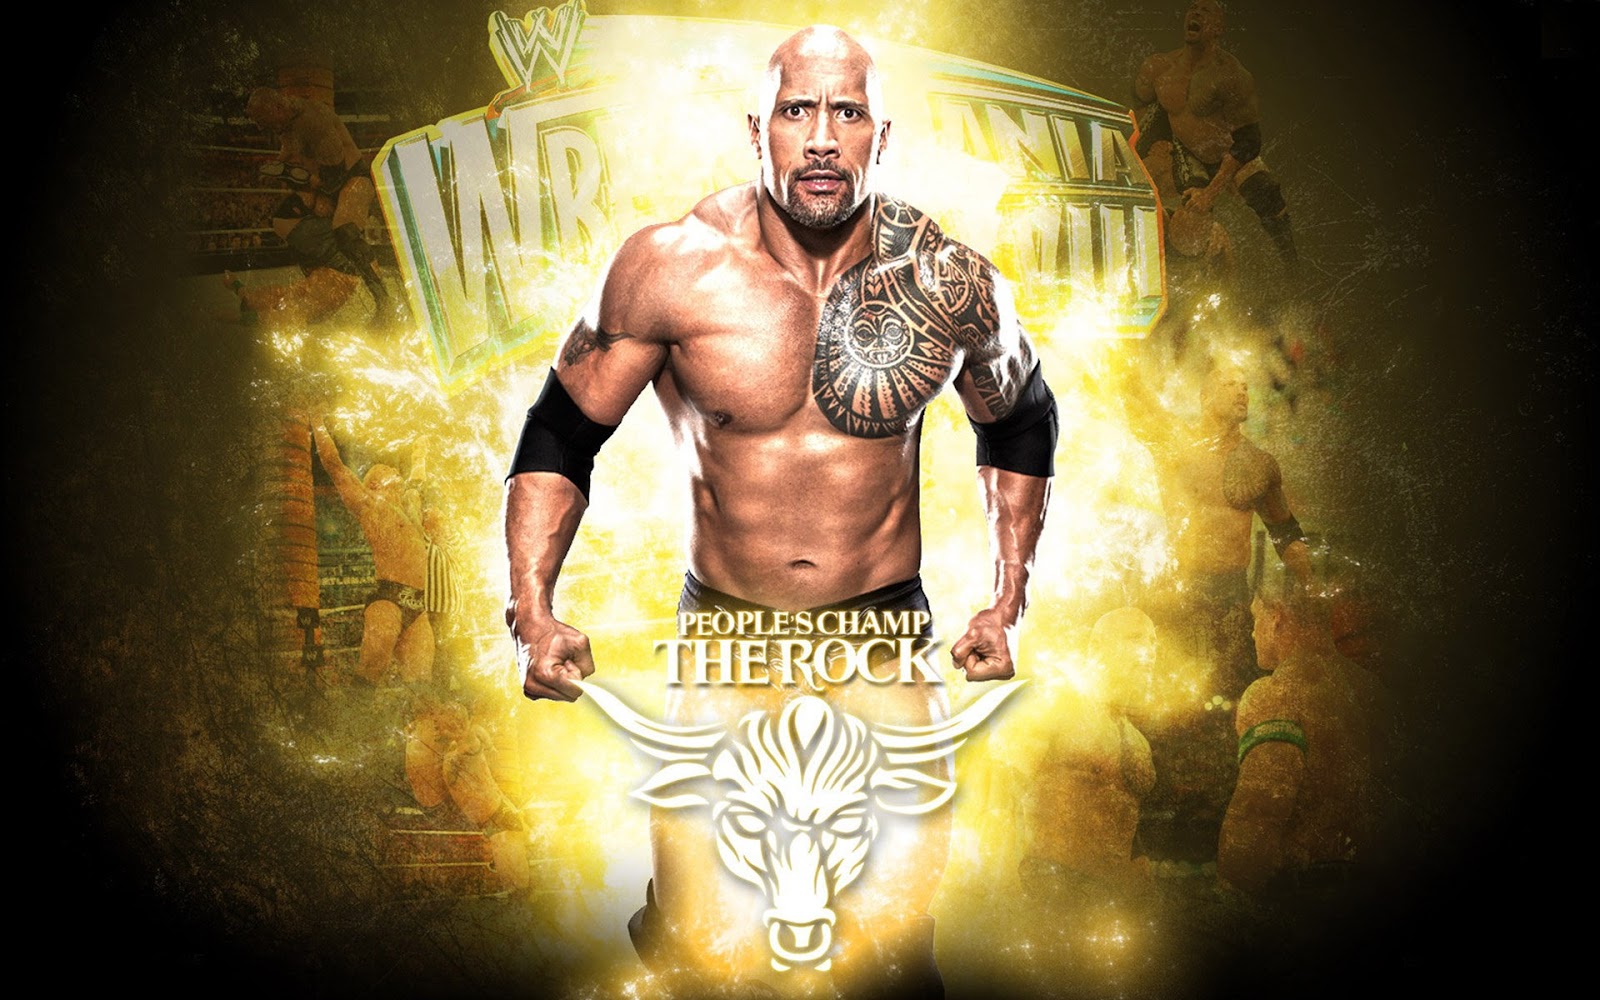 rock wallpaper download,wrestler,professional wrestling,poster,muscle,mythology